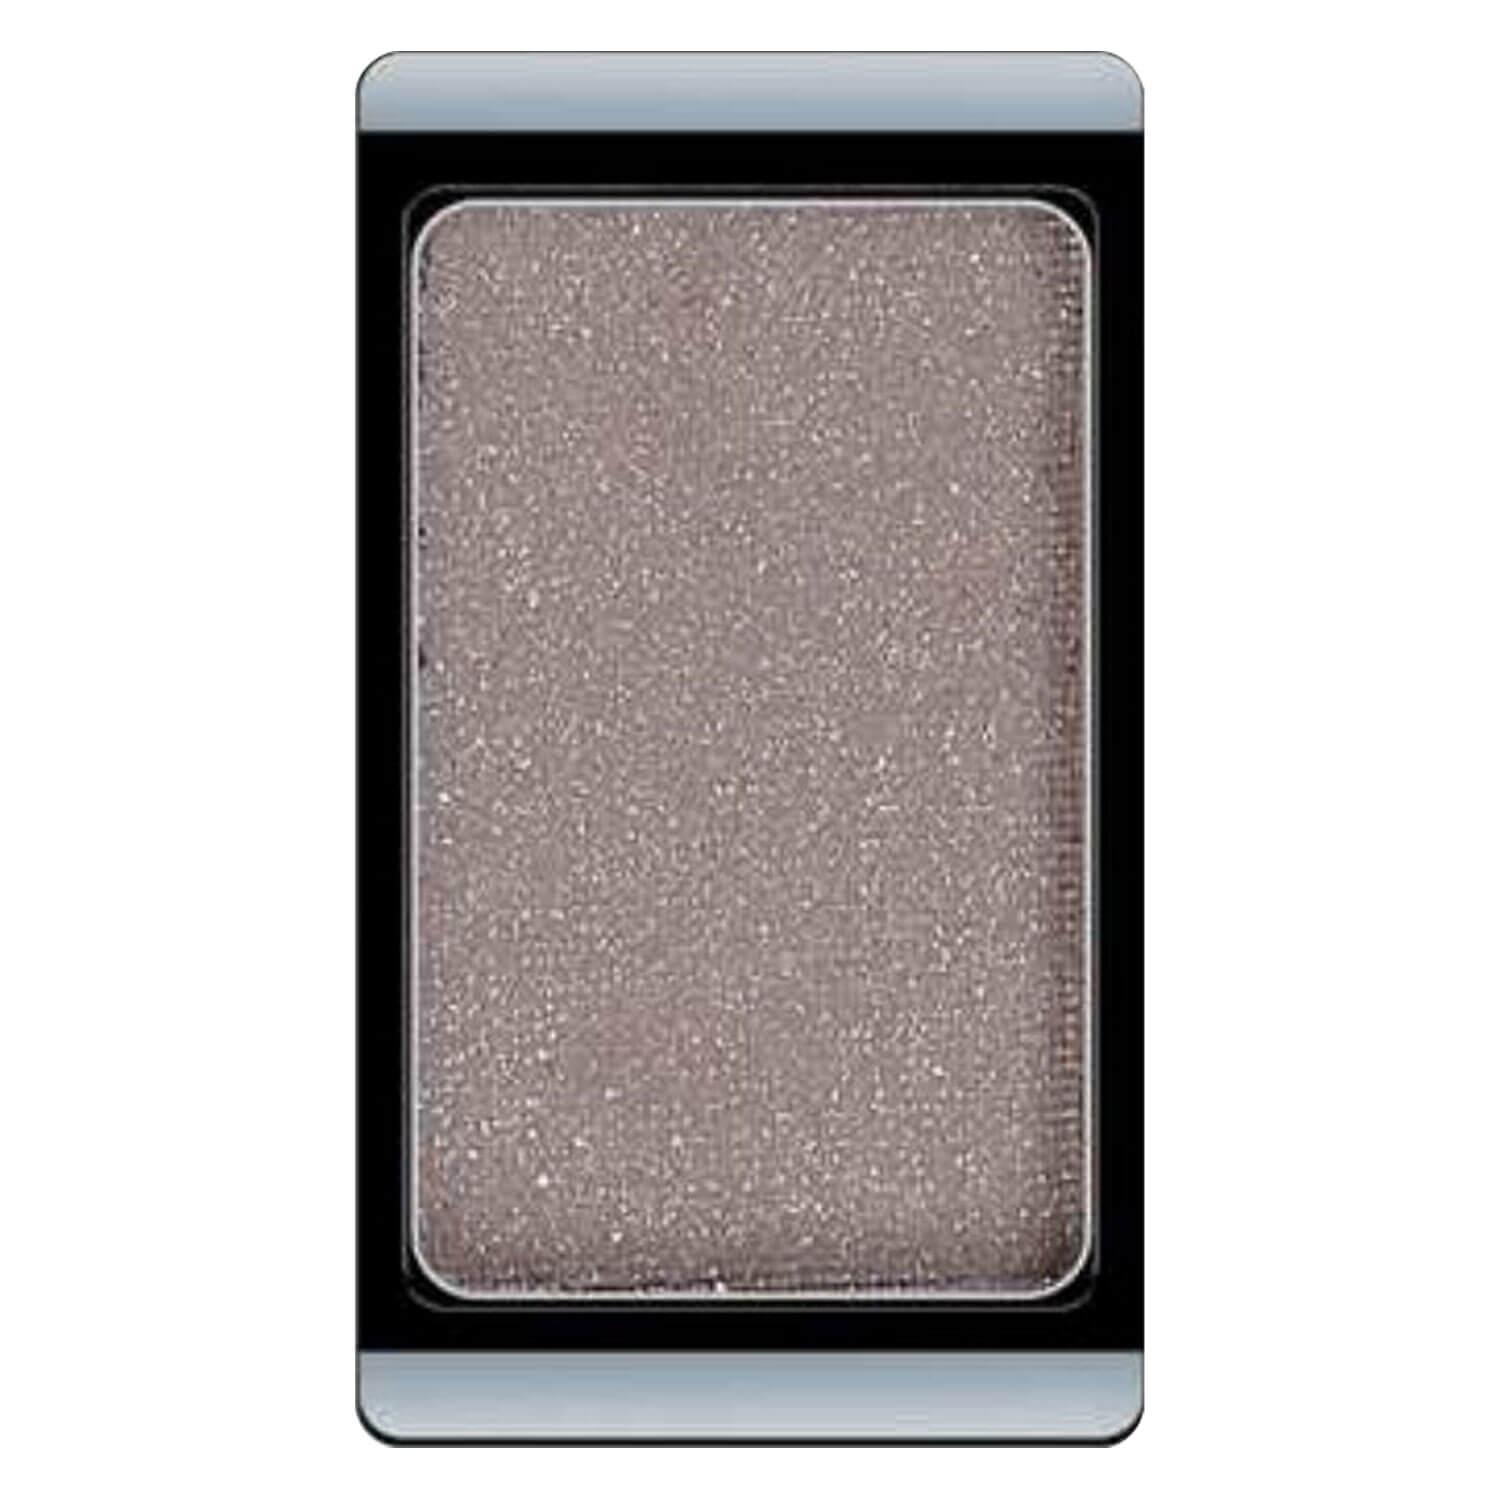 Eyeshadow Glamour - Grey Beige 350